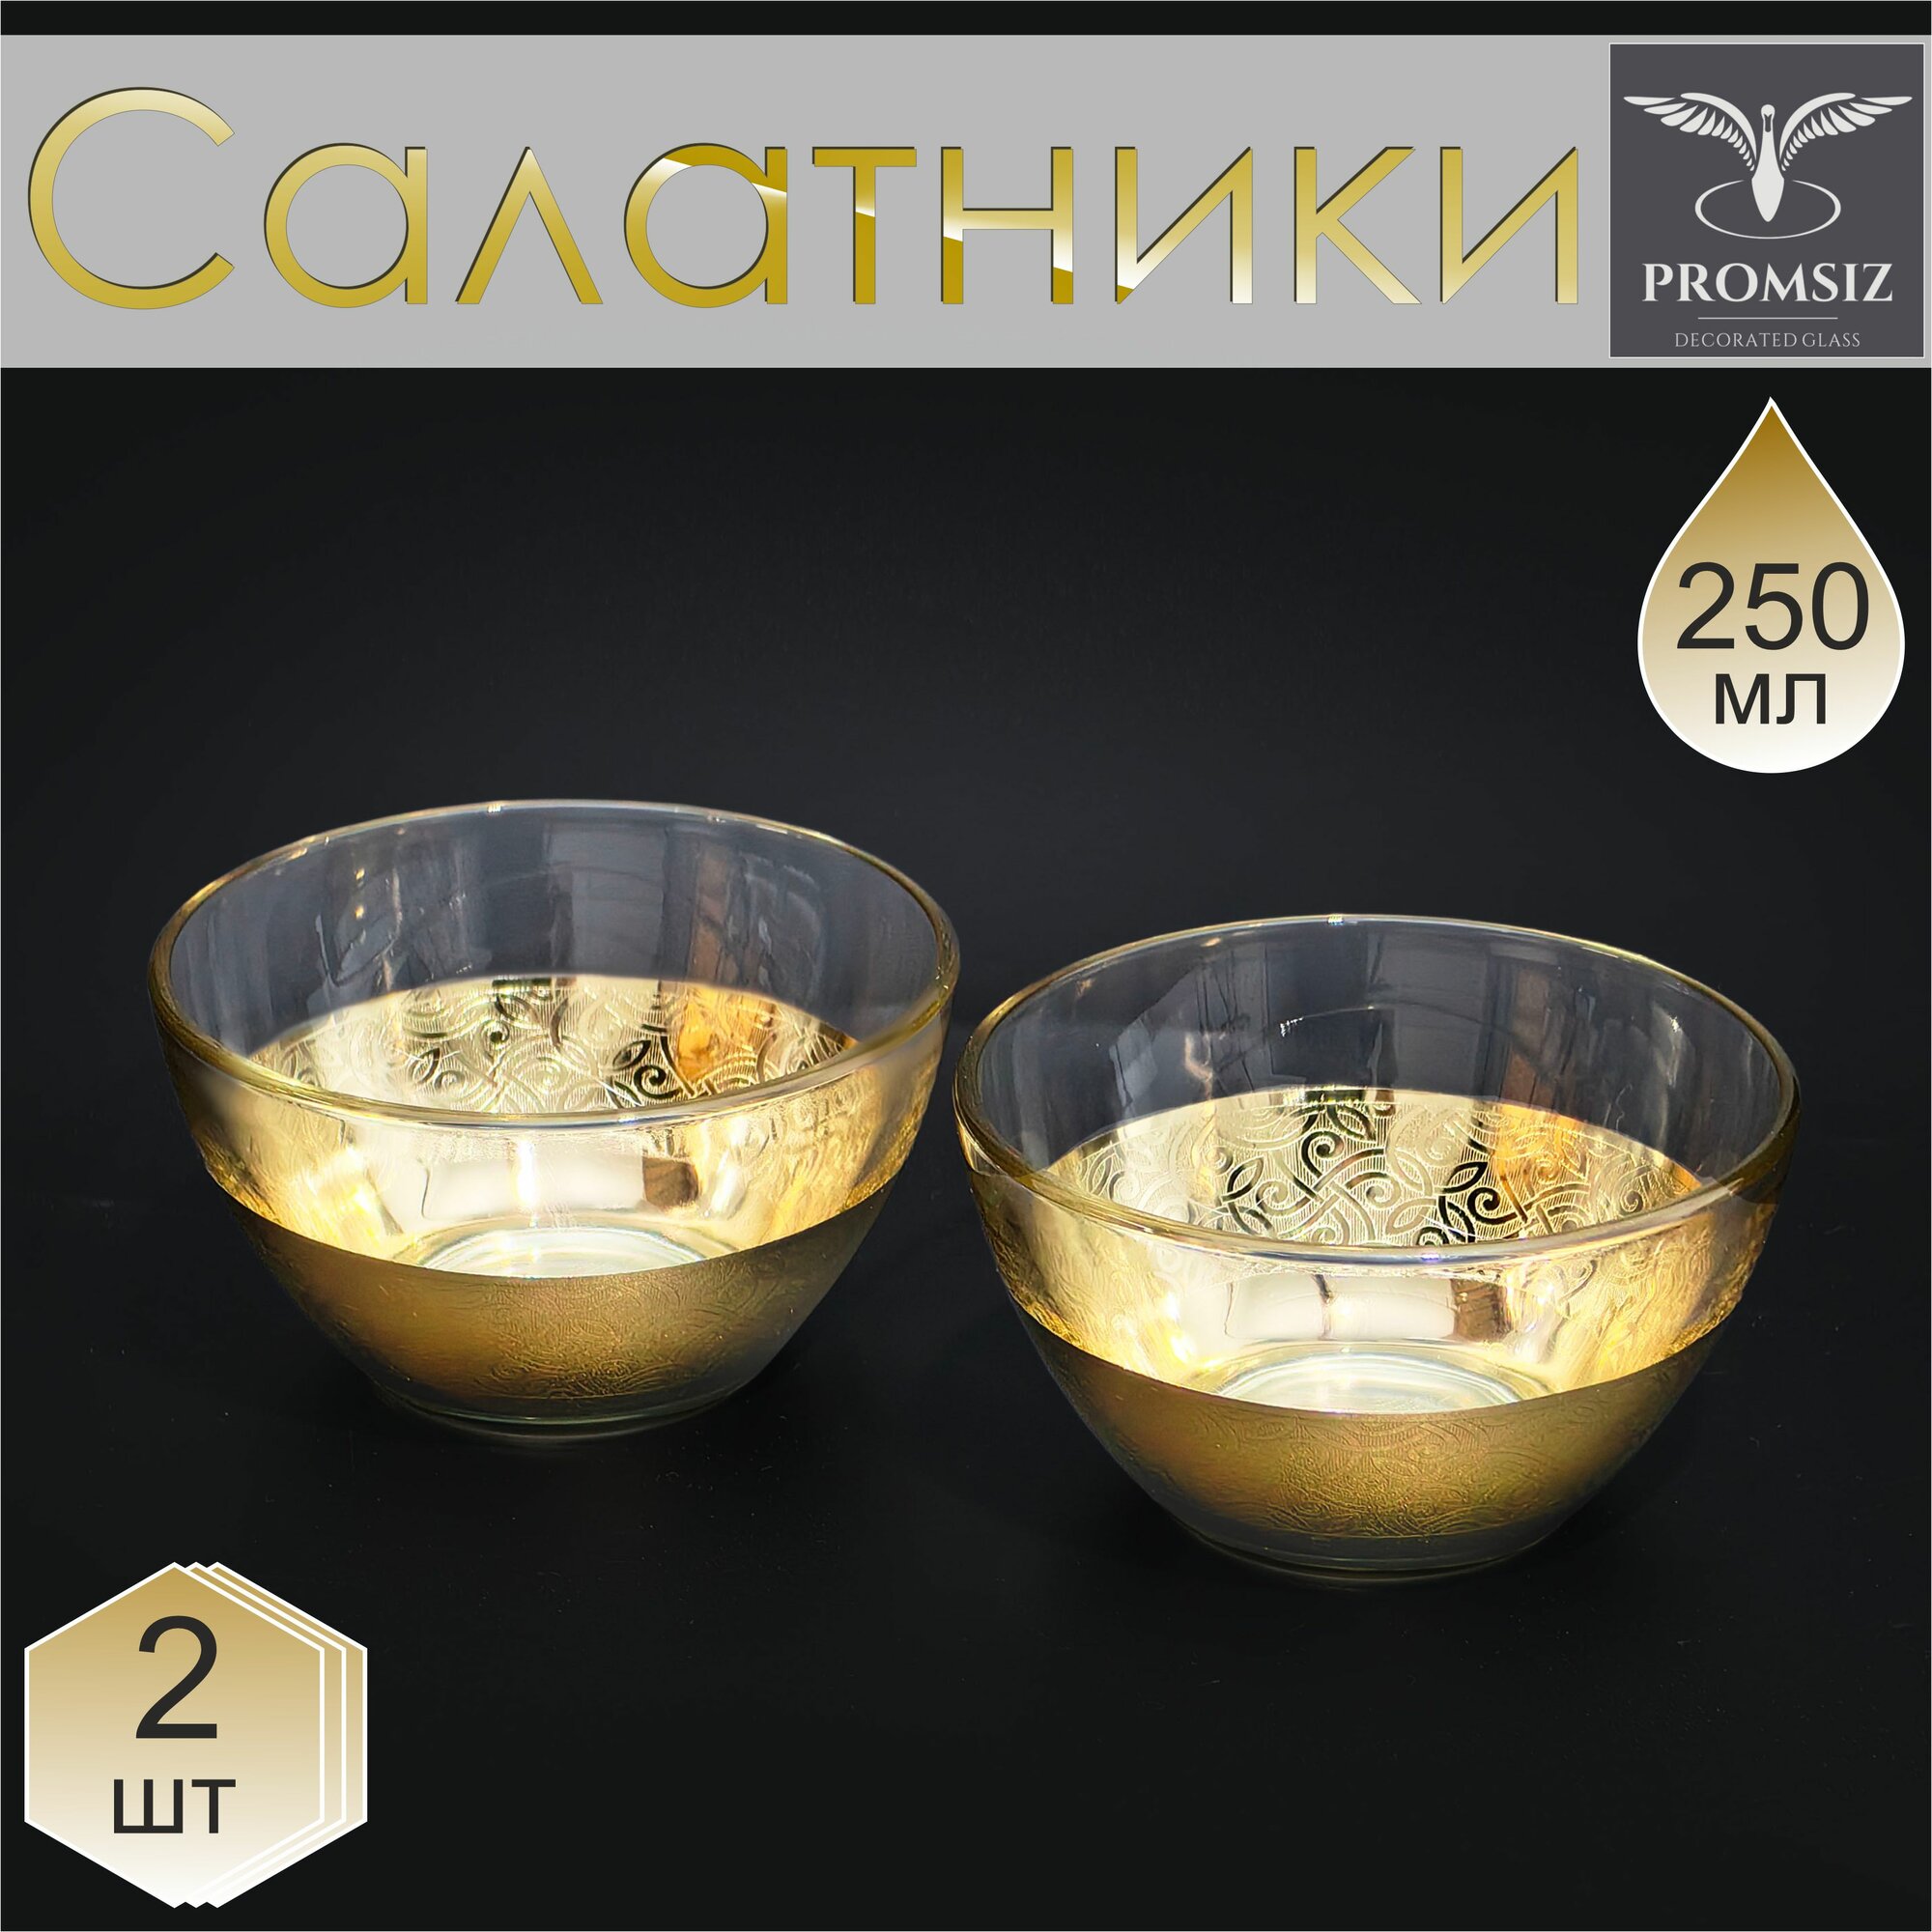 Набор стеклянных салатников с алмазной гравировкой PPOMSIZ колизей / Подарочный набор посуды в подарок / Салатница стекло / Посуда для сервировки и подачи / 250 мл, 2 шт.